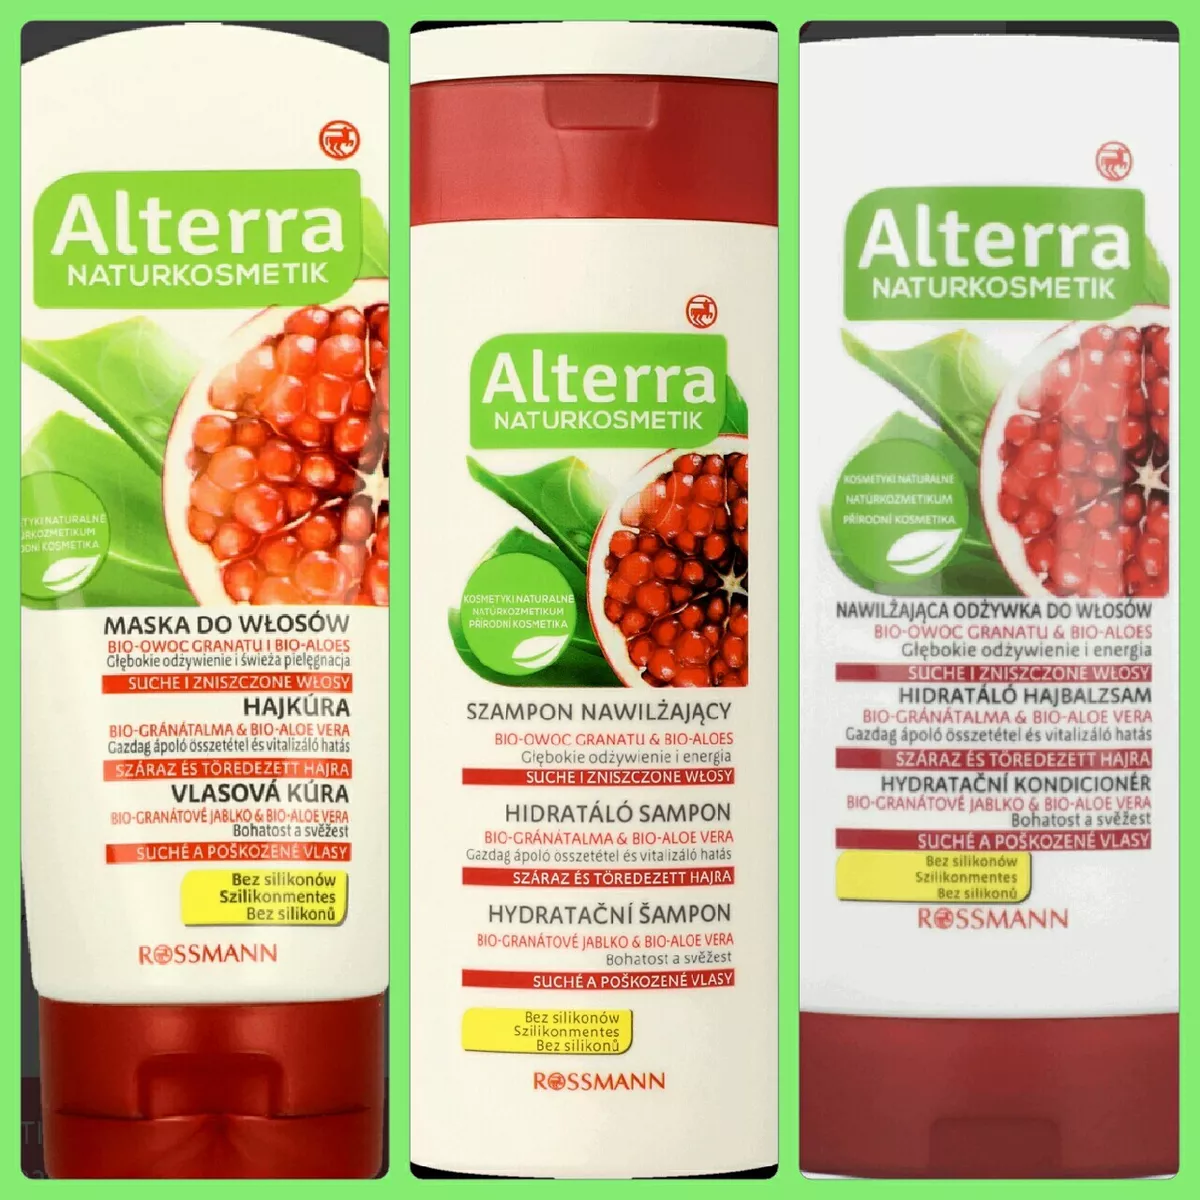 szampon nawilżający bio-owoc granatu& bio-aloes alterra naturkosmetik